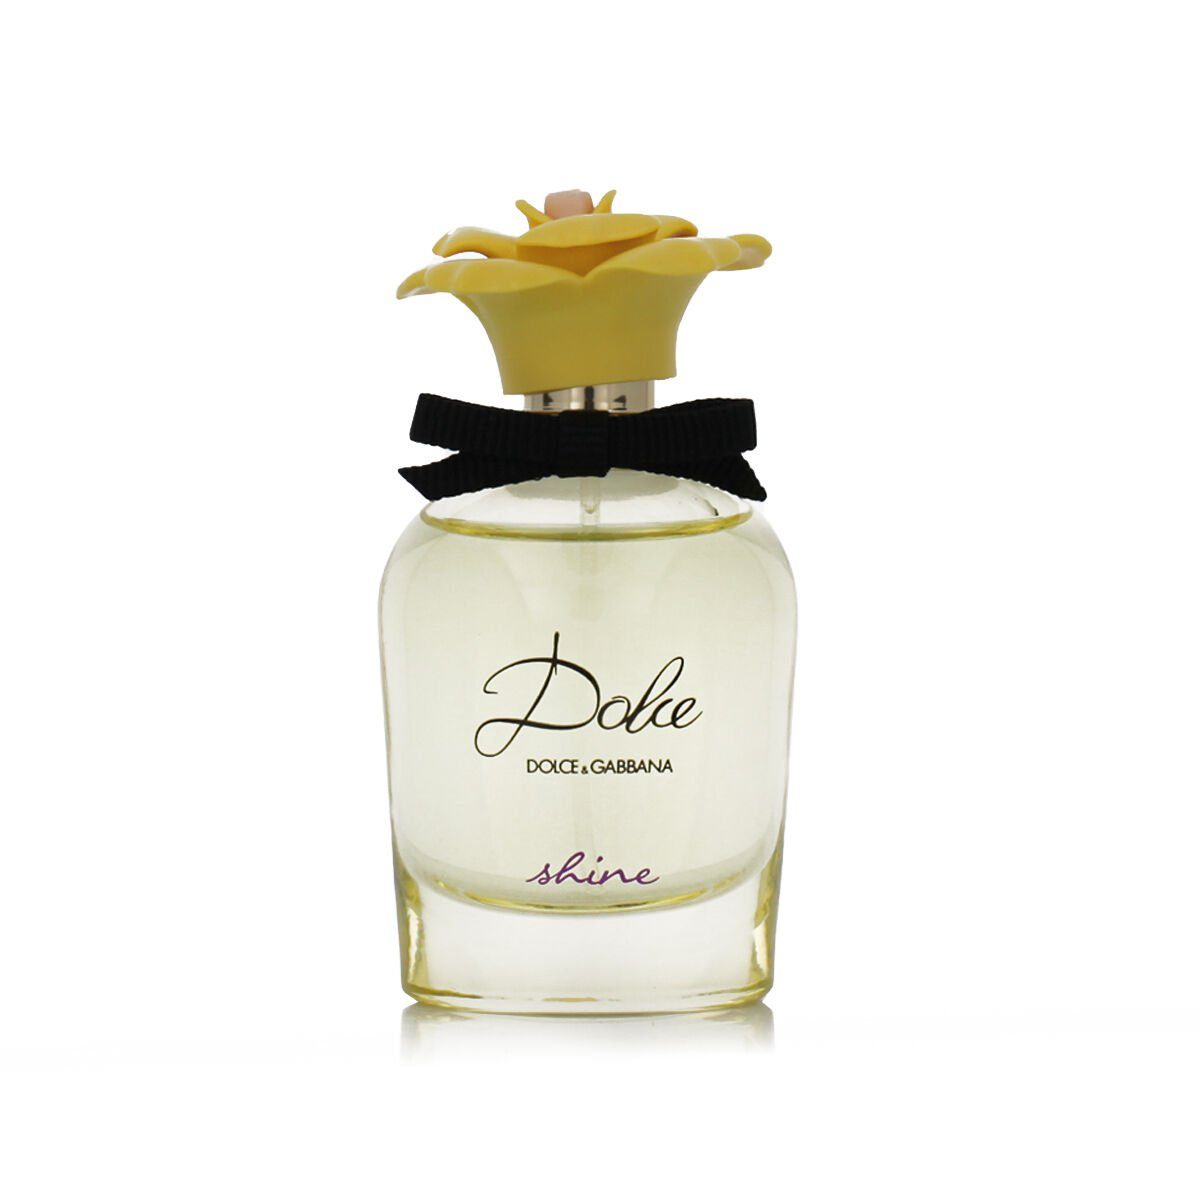 DOLCE & Eau ml Eau GABBANA Dolce 50 Parfum Damenparfüm Toilette Dolce Gabbana de de Shine